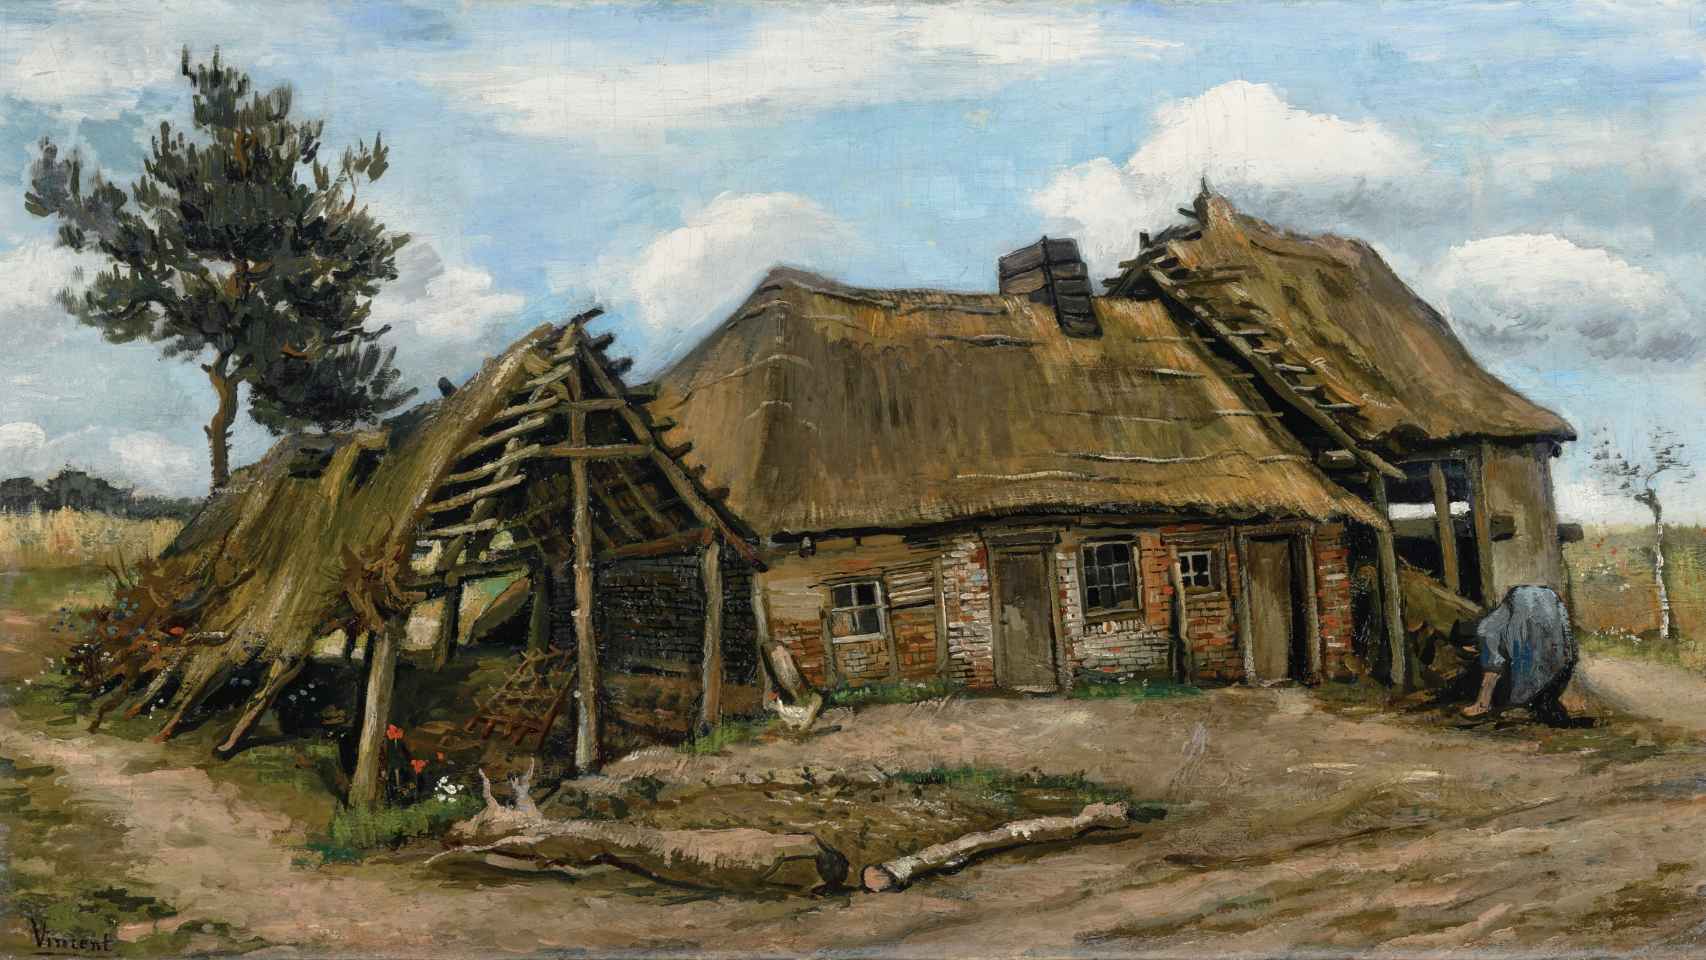 Mujer campesina frente a una cabaña', de Van Gogh.